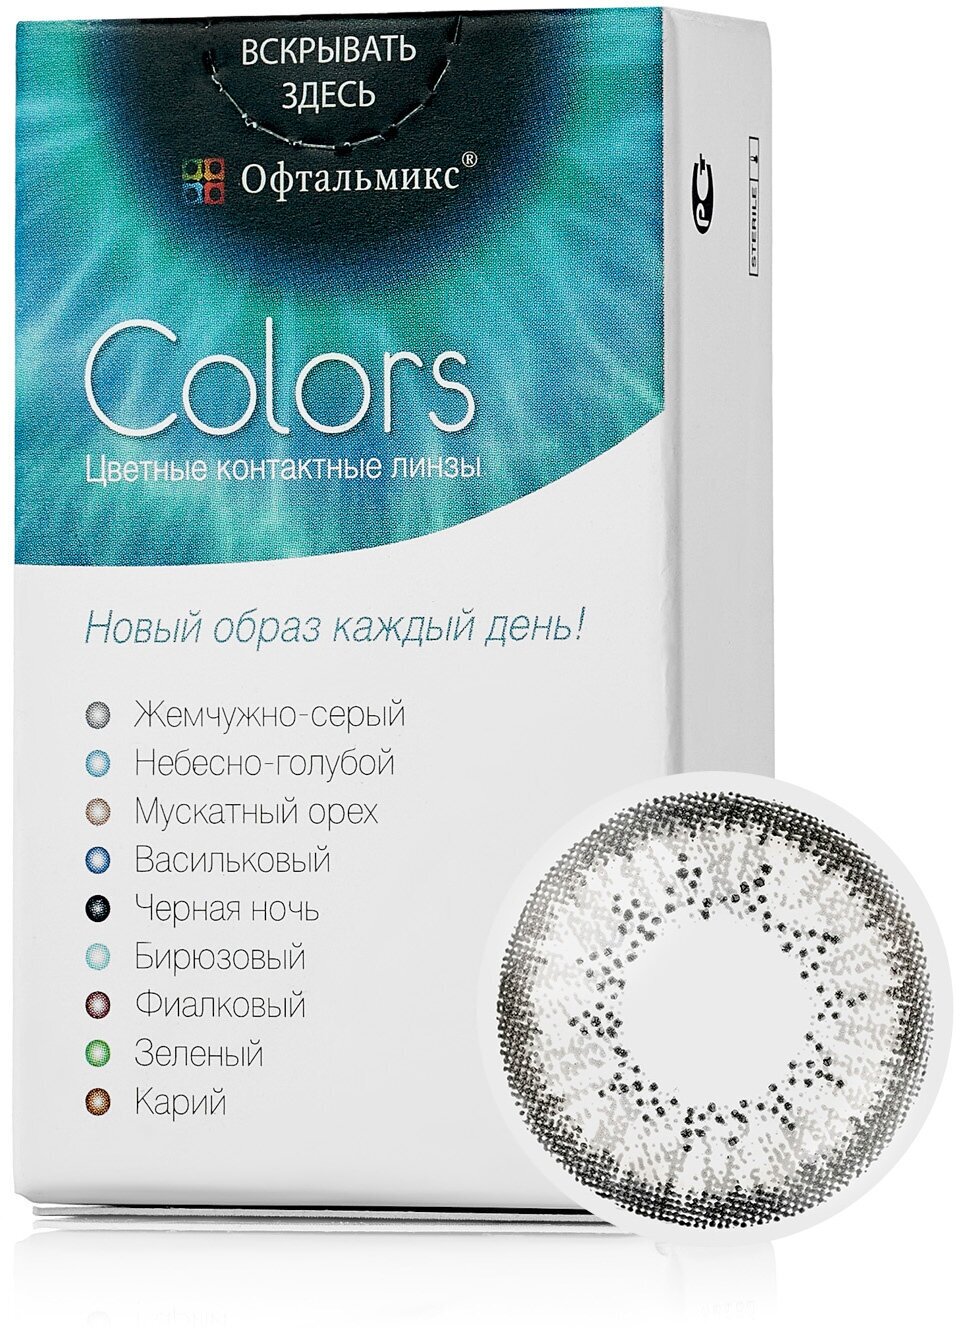 Цветные контактные линзы Офтальмикс Color Gray (жемчужно-серый) R8.6 -6.0D (2шт.)